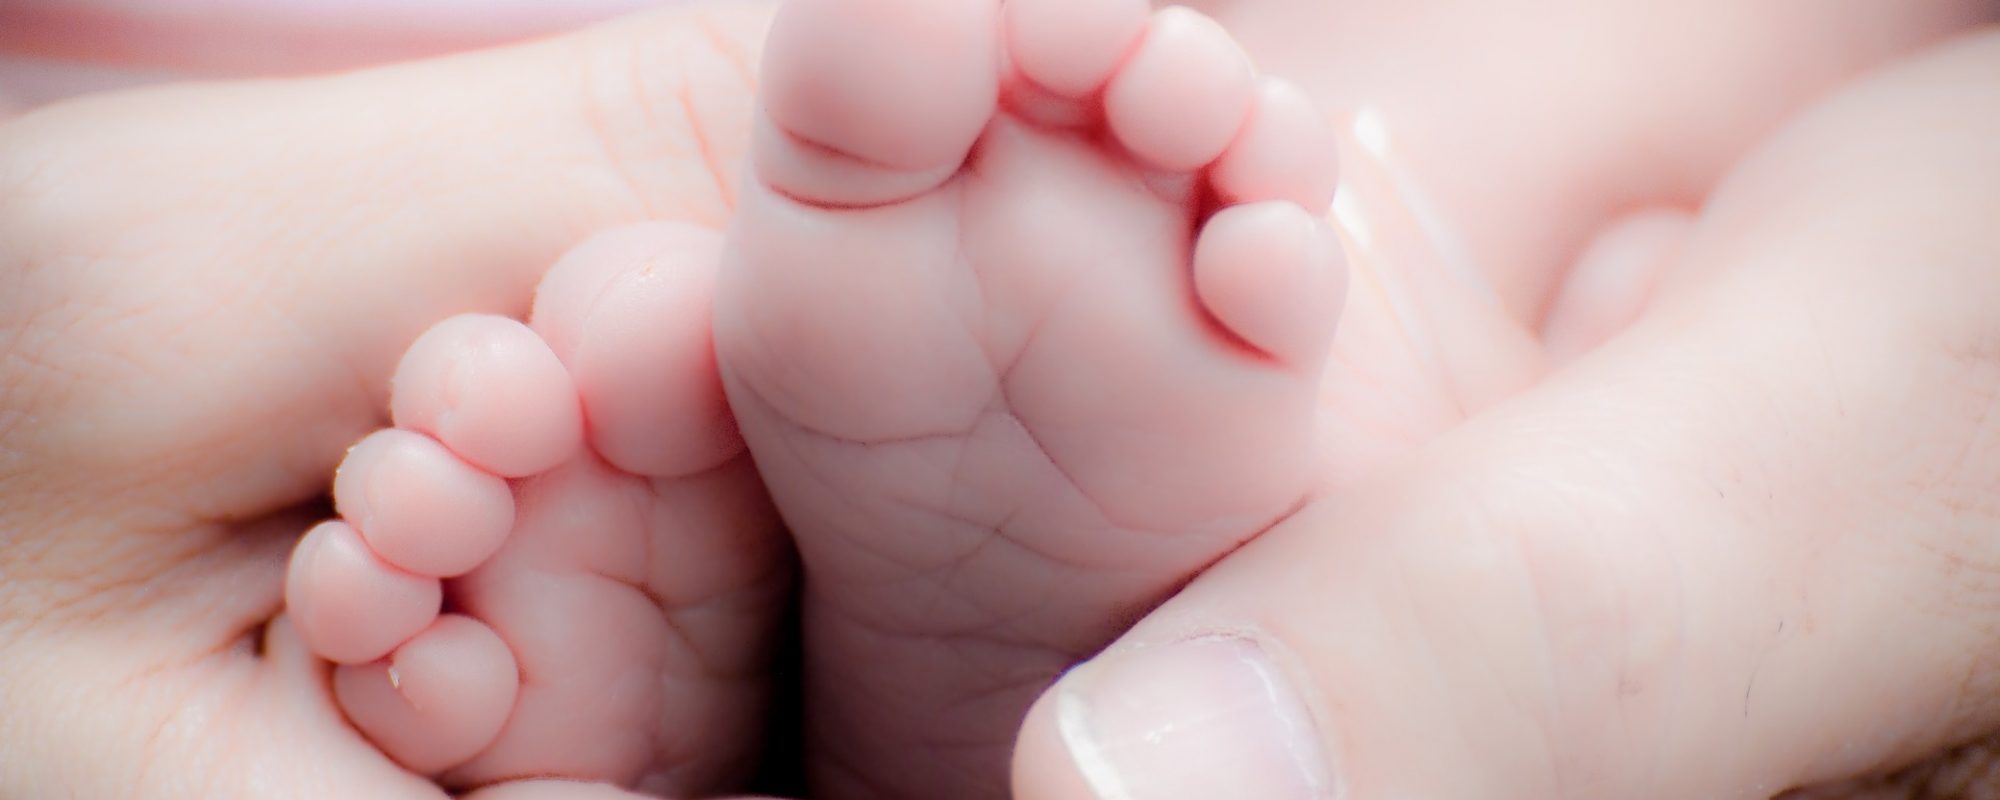 baby-voetjes-in-hand